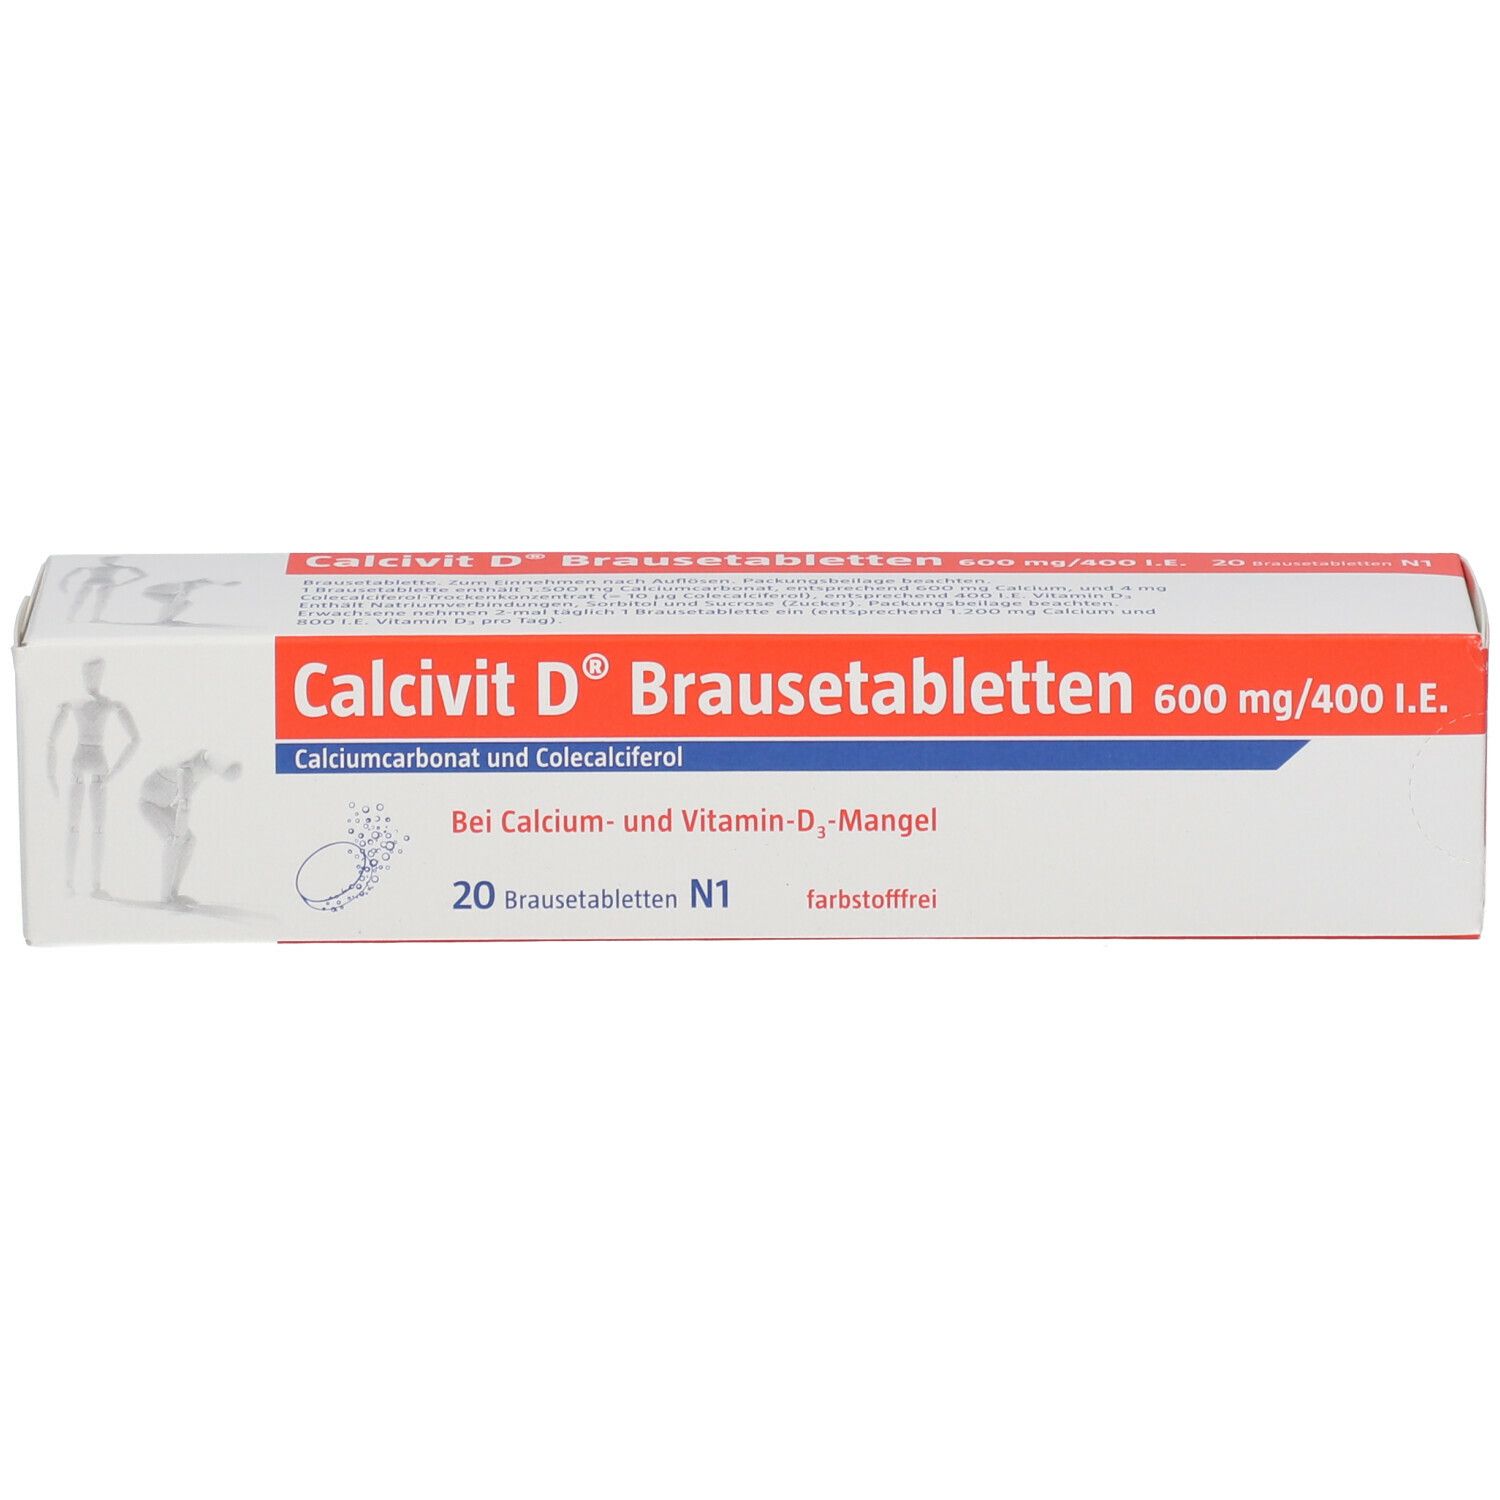 Calcivit D® Brausetabletten, 600 mg/400 I.E.